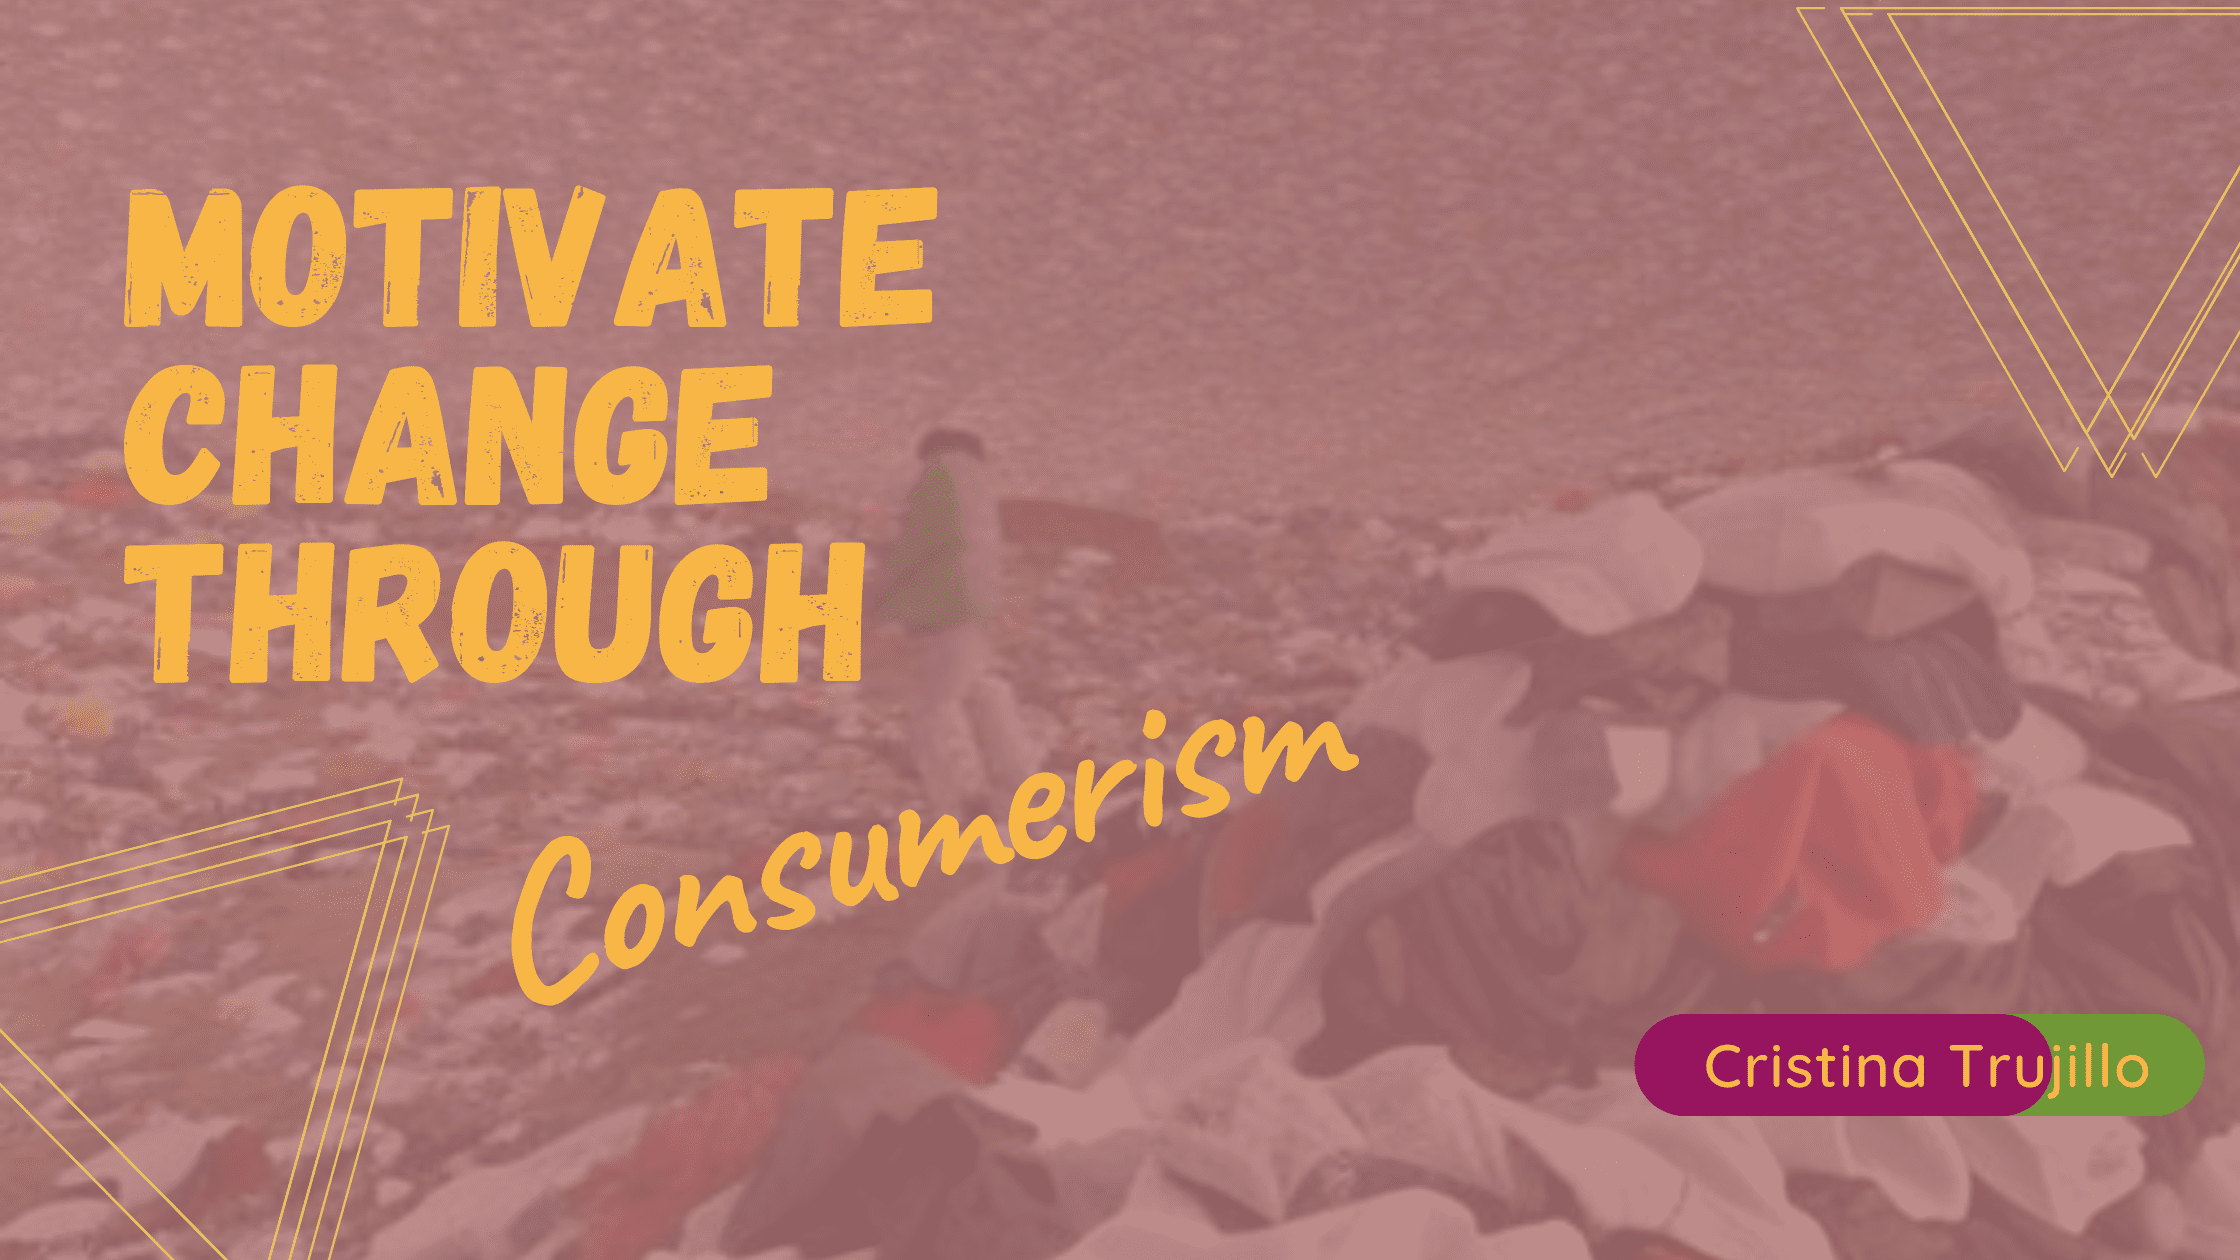 Motivate Change Through Consumerism